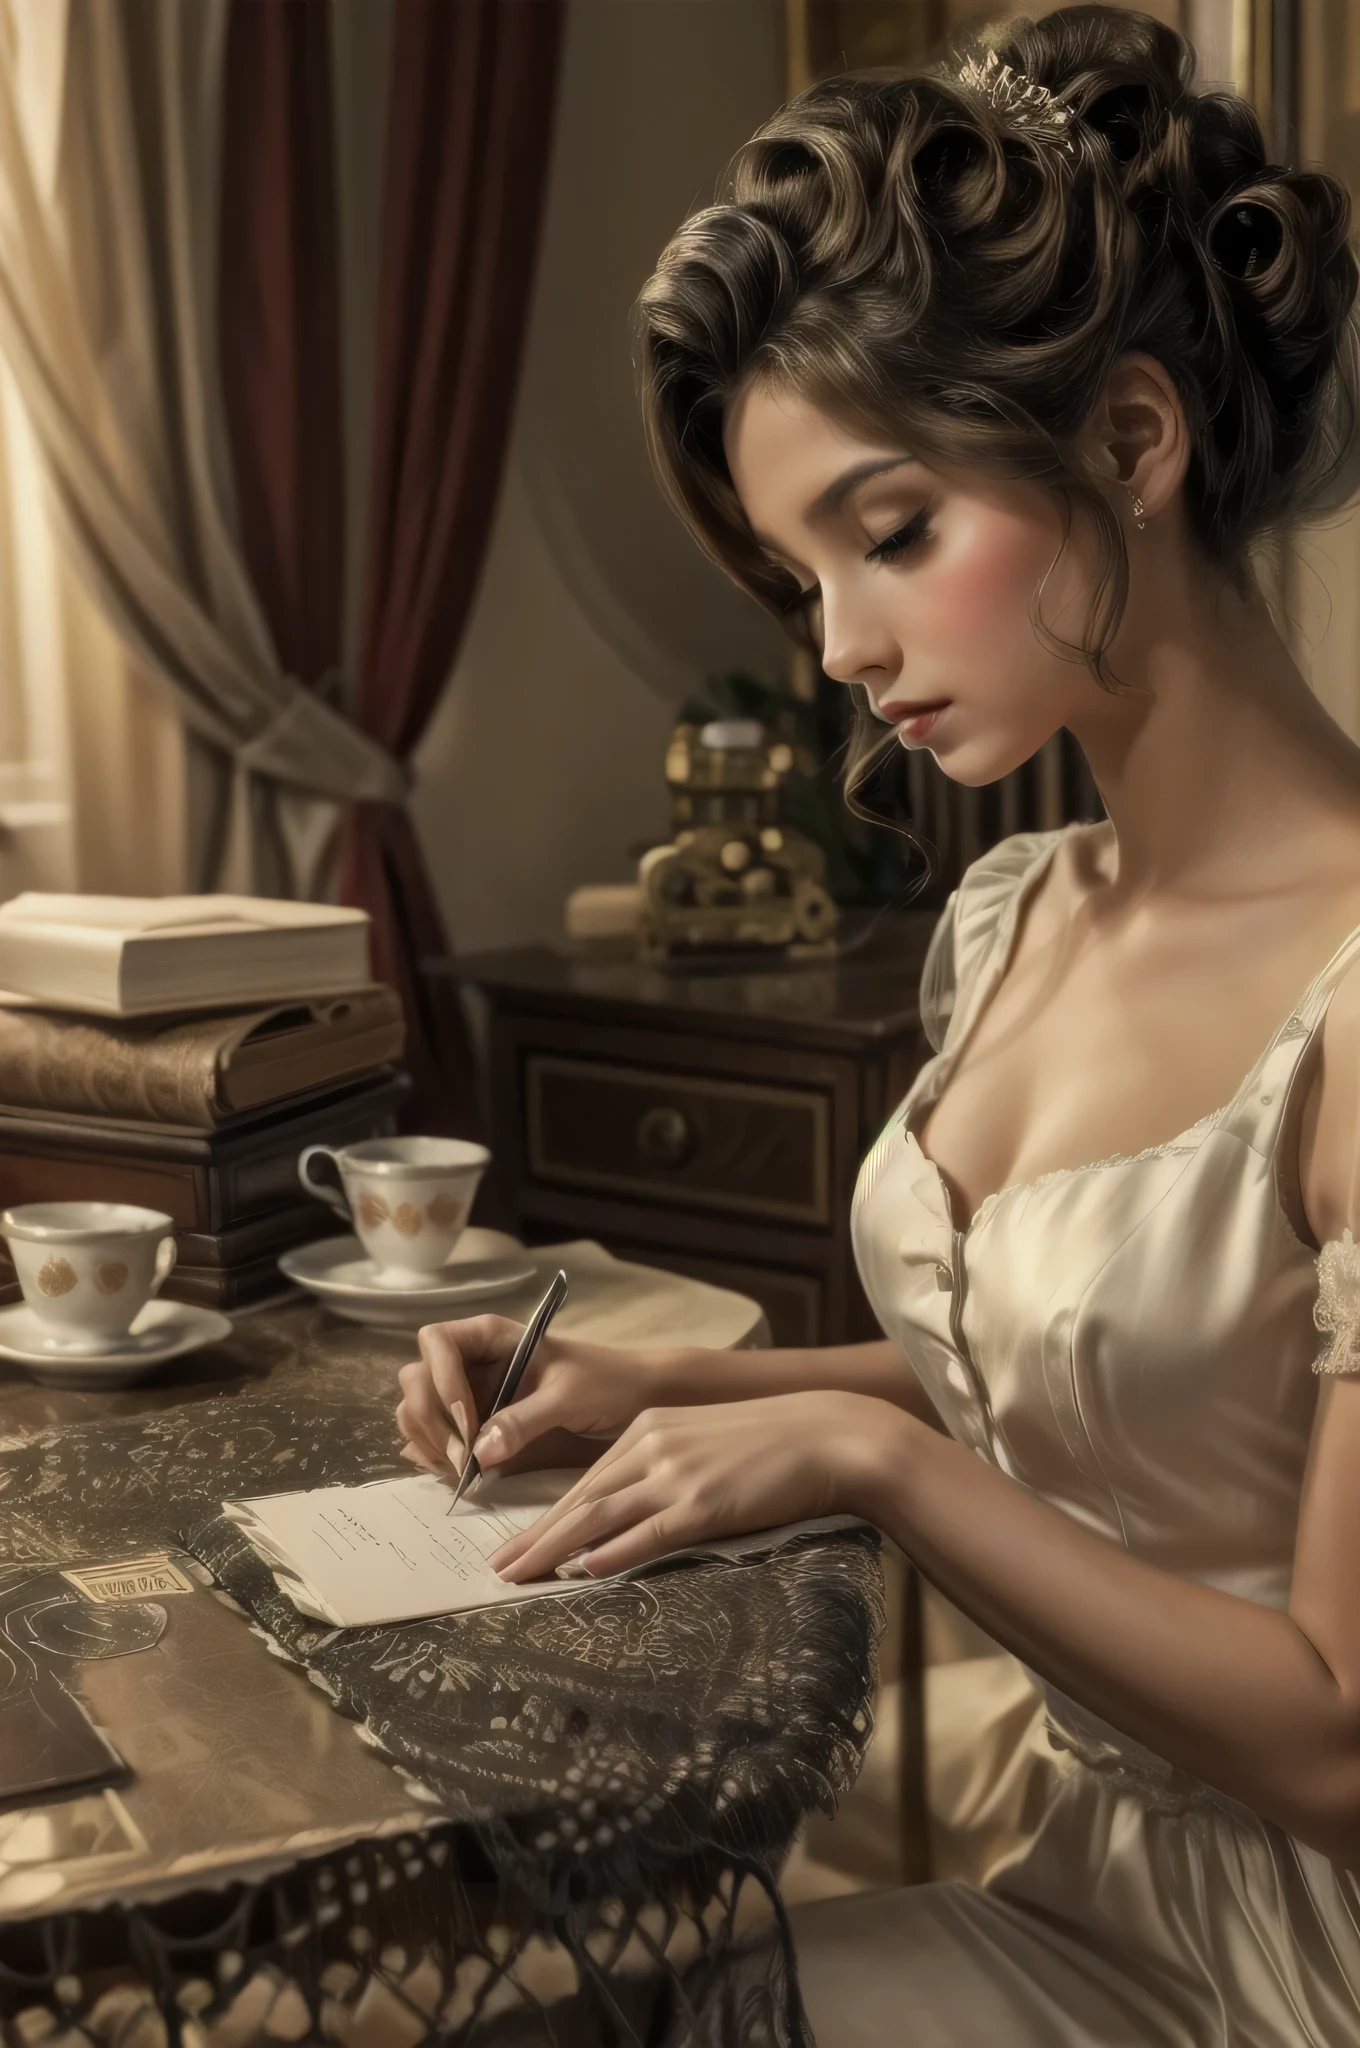 有一個女人坐在桌邊在一張紙上寫字, 寫一封信, 復古與浪漫主義, 優雅的女孩, 浪漫風格, 優雅的工作室, 維多利亞風格, 一個美麗的維多利亞時代的女人, 優雅的女人, 精緻貴族, 優雅的肖像, 維多利亞時代的女士, 浪漫主義肖像, 優雅的女士, 復古攝影, 穿著優雅的連身裙, 復古妝容, 很漂亮的女孩, 從20世紀40年代開始, 20世紀40年代的連身裙, 坐在一個小房間裡, 看一個郵政信封, 40年代電影場景, 40年代風格的家具, 超真實影像, 角度概述, 漂亮的臉蛋, 美麗的姿勢, 精緻的輪廓, 夢幻般的樣子, 場景, 柔和色彩的家具, 40 年代的連身裙.